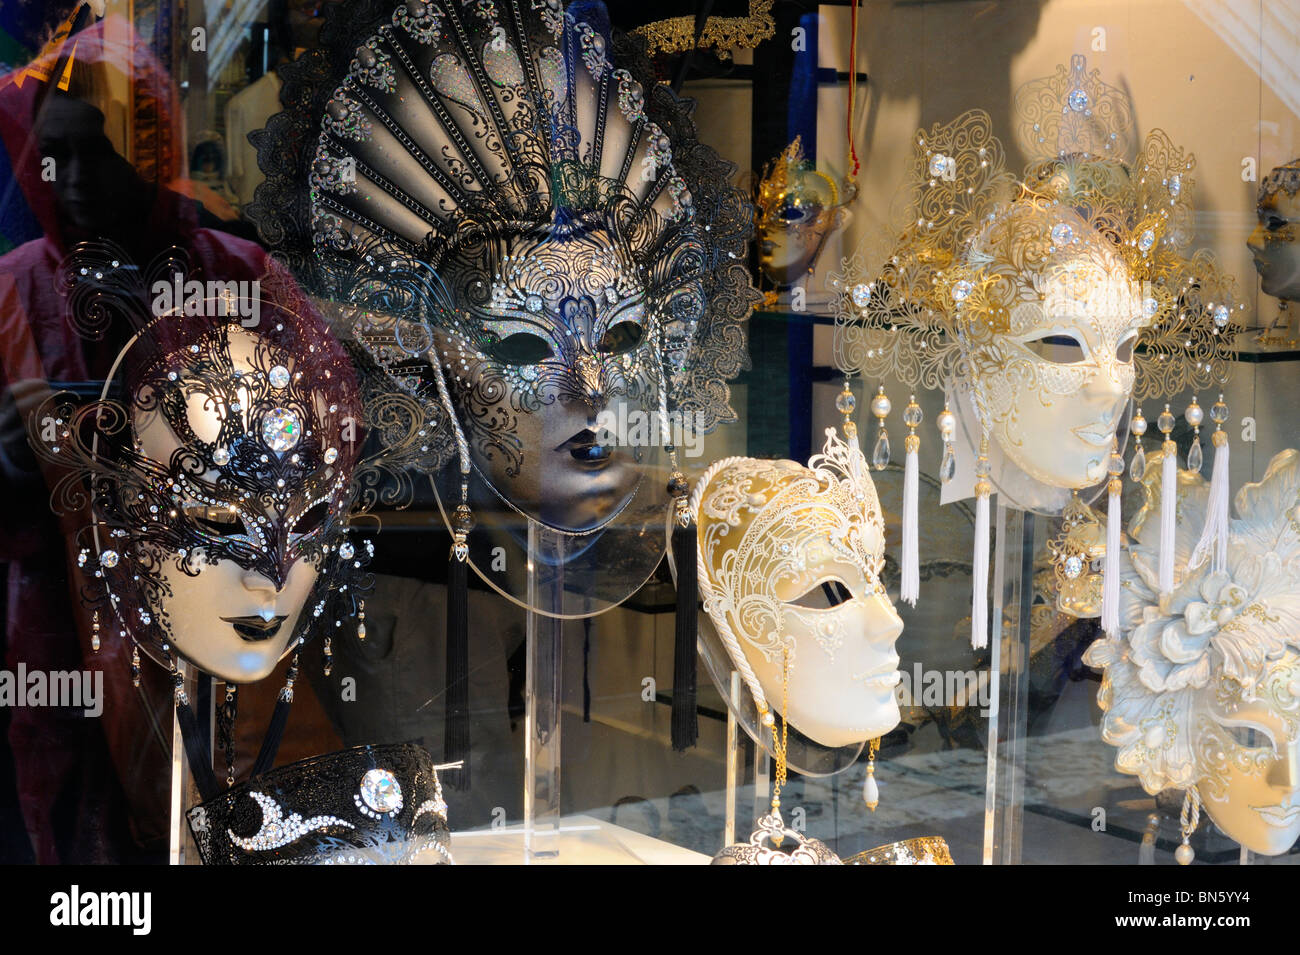 An ornate masque display on Riva del Vin in Rialto, Venice Stock Photo